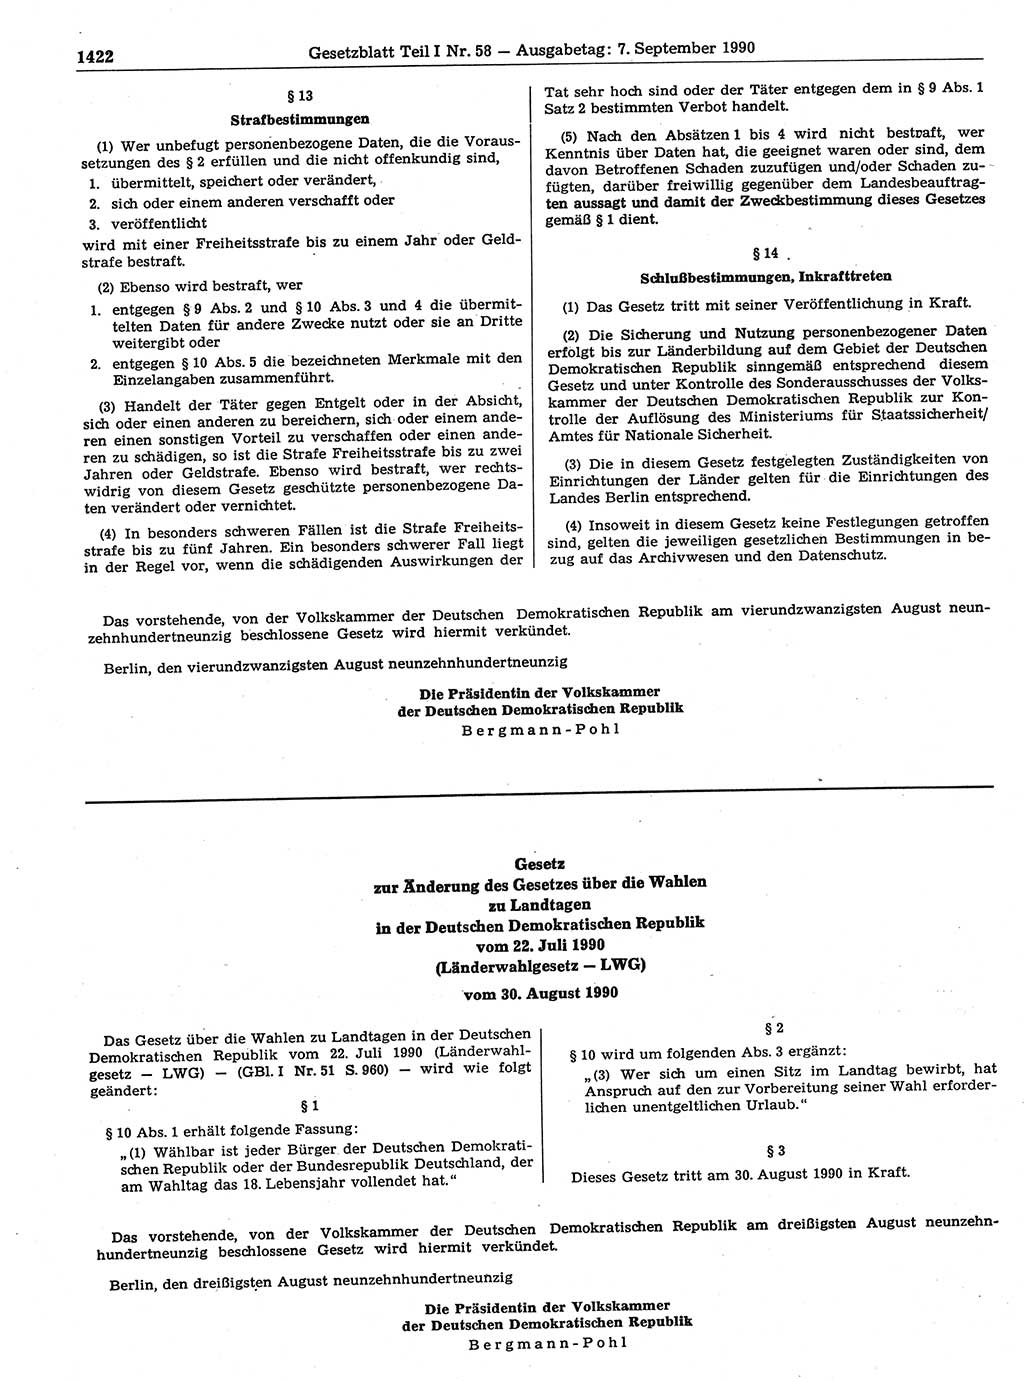 Gesetzblatt (GBl.) der Deutschen Demokratischen Republik (DDR) Teil Ⅰ 1990, Seite 1422 (GBl. DDR Ⅰ 1990, S. 1422)